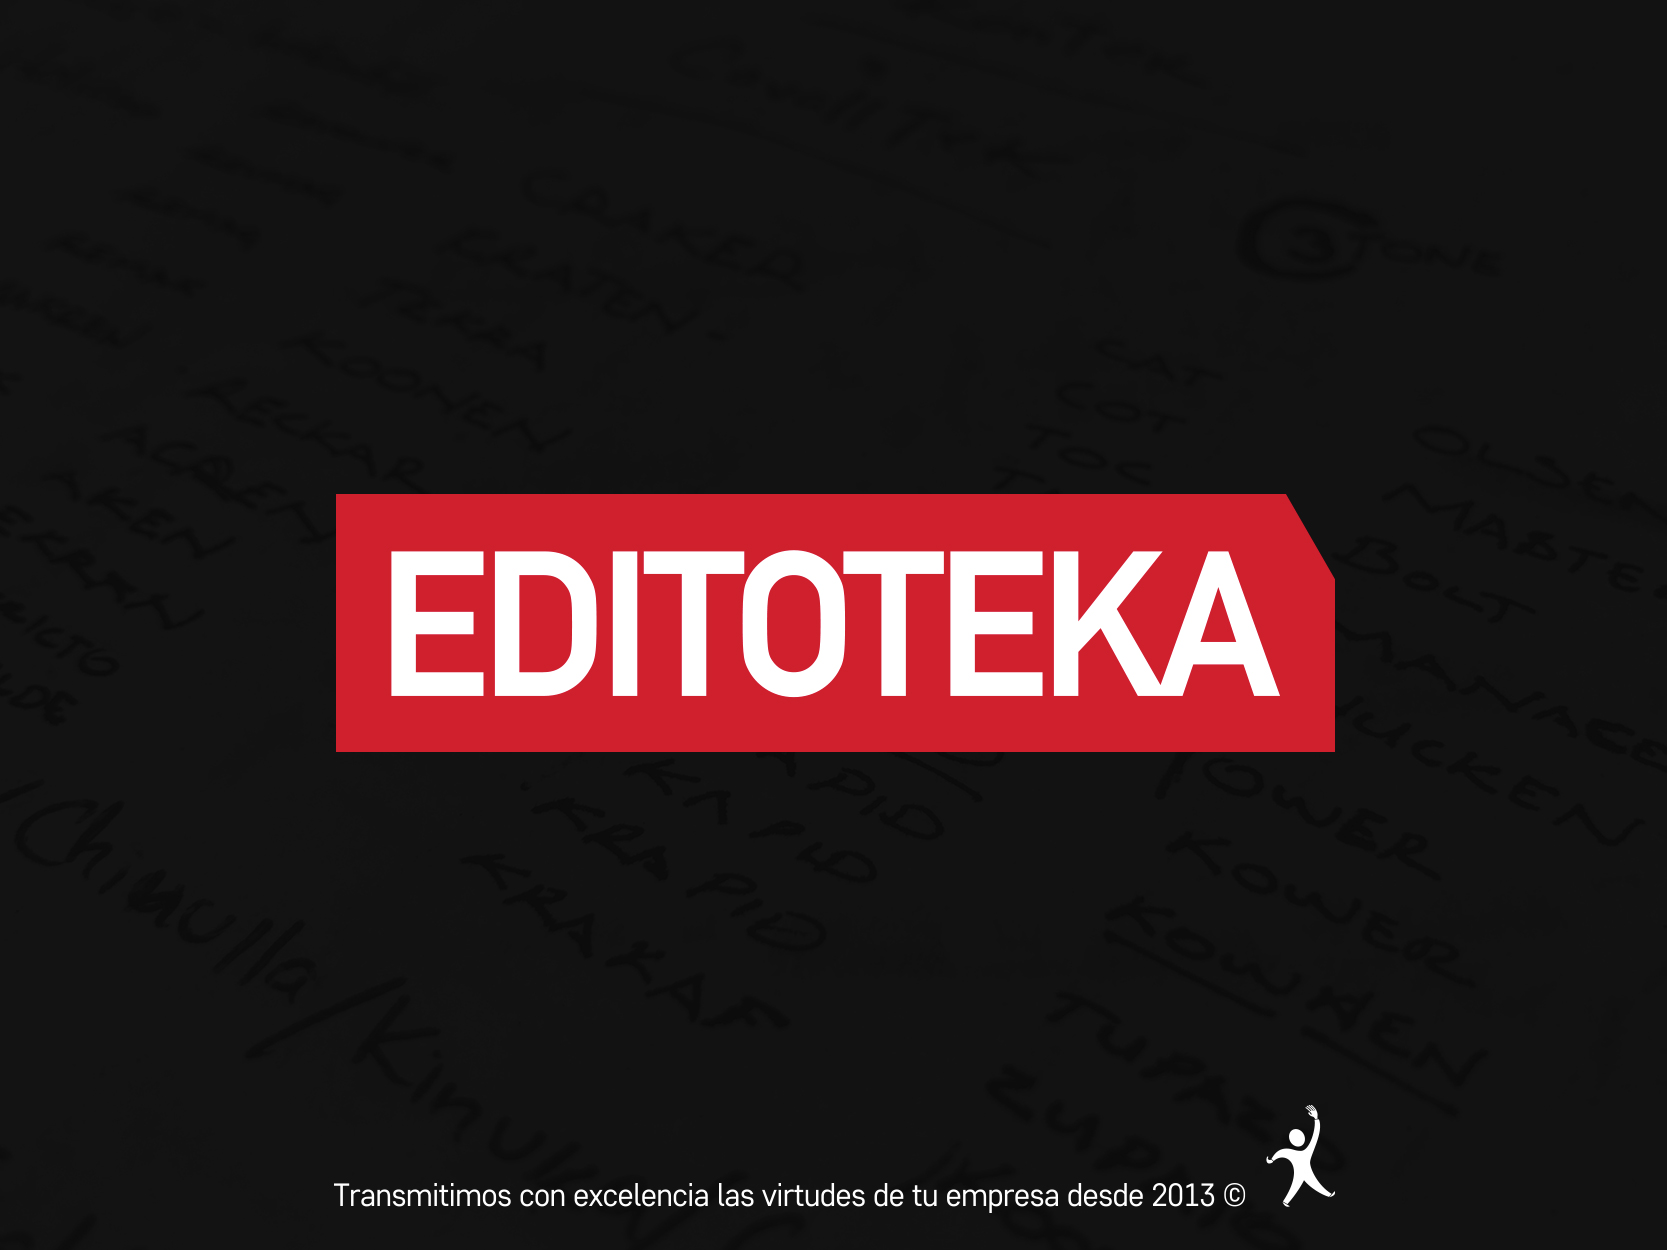 (c) Editoteka.com